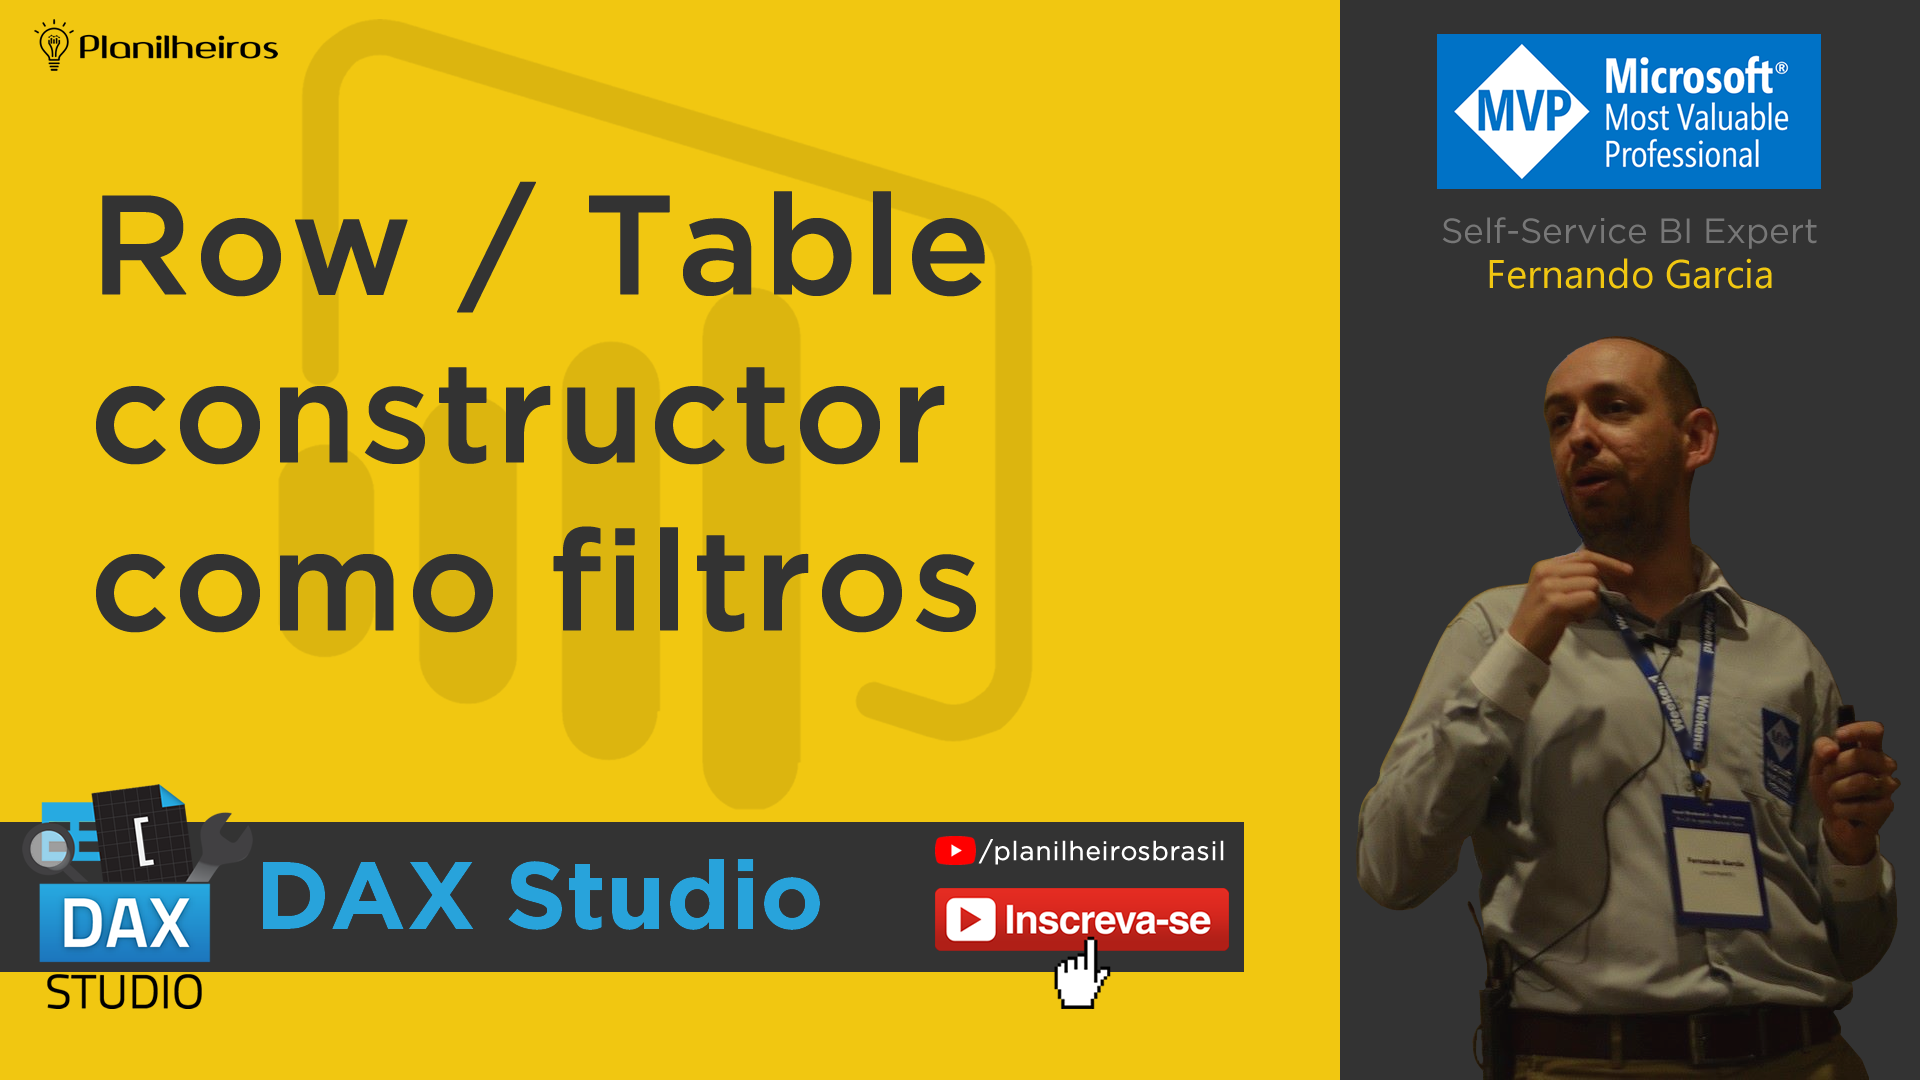 DAX Studio - Row/Table Constructor como filtros